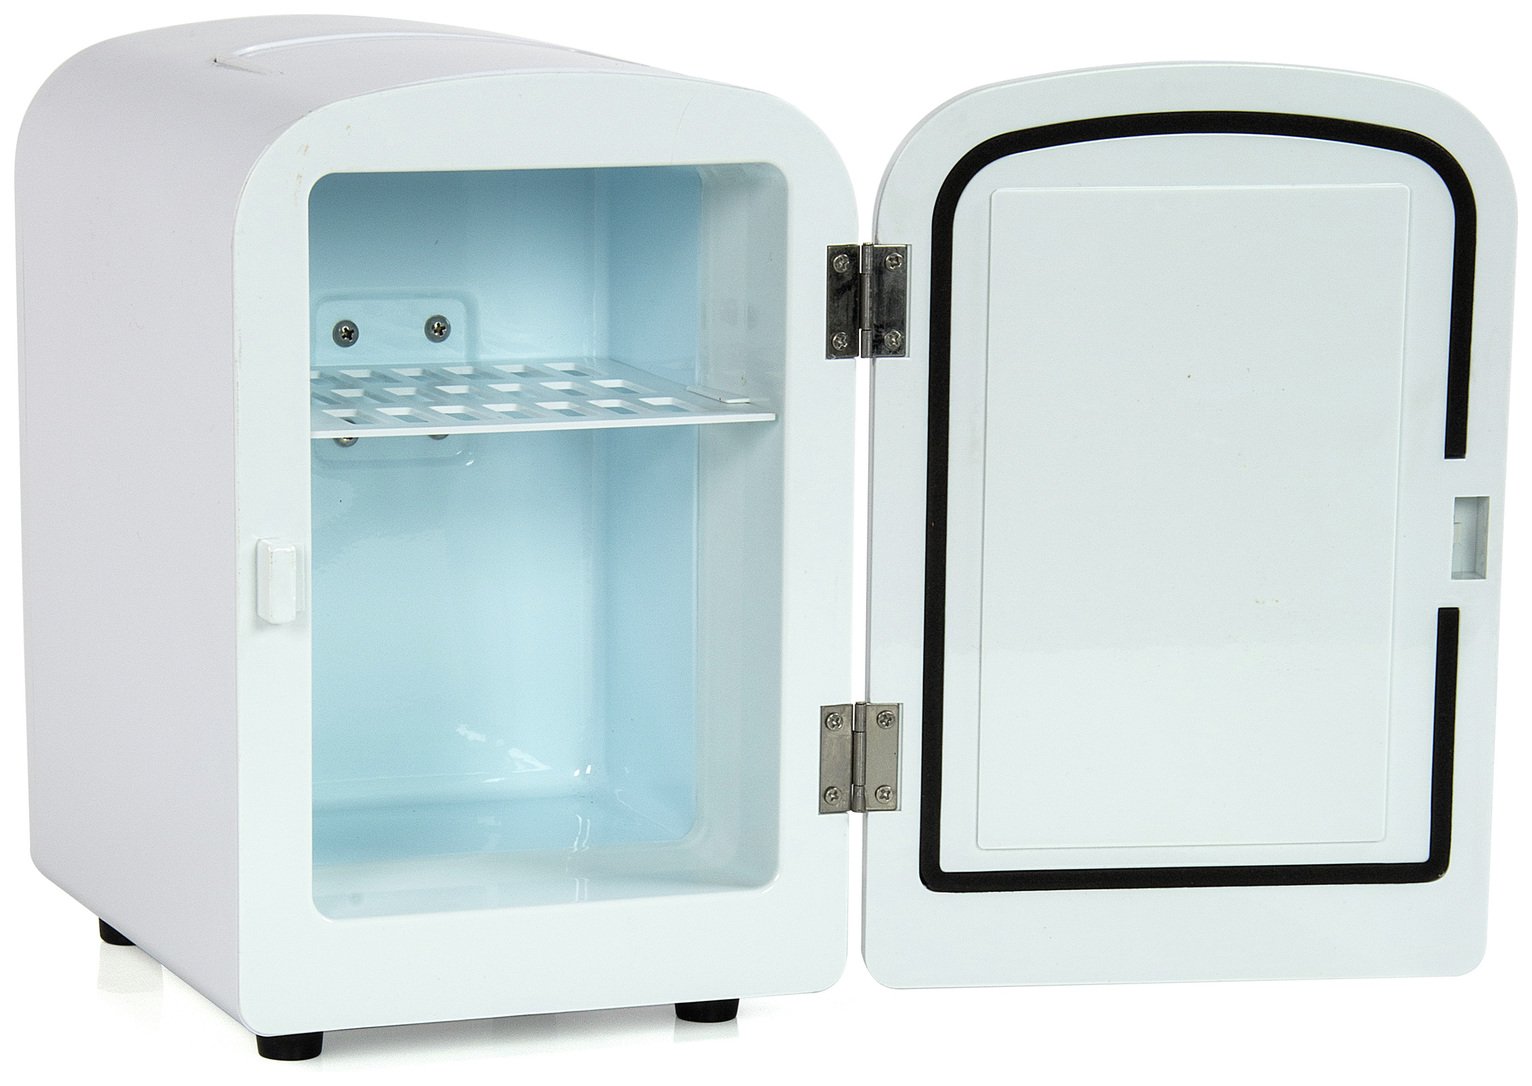 travel size fridge